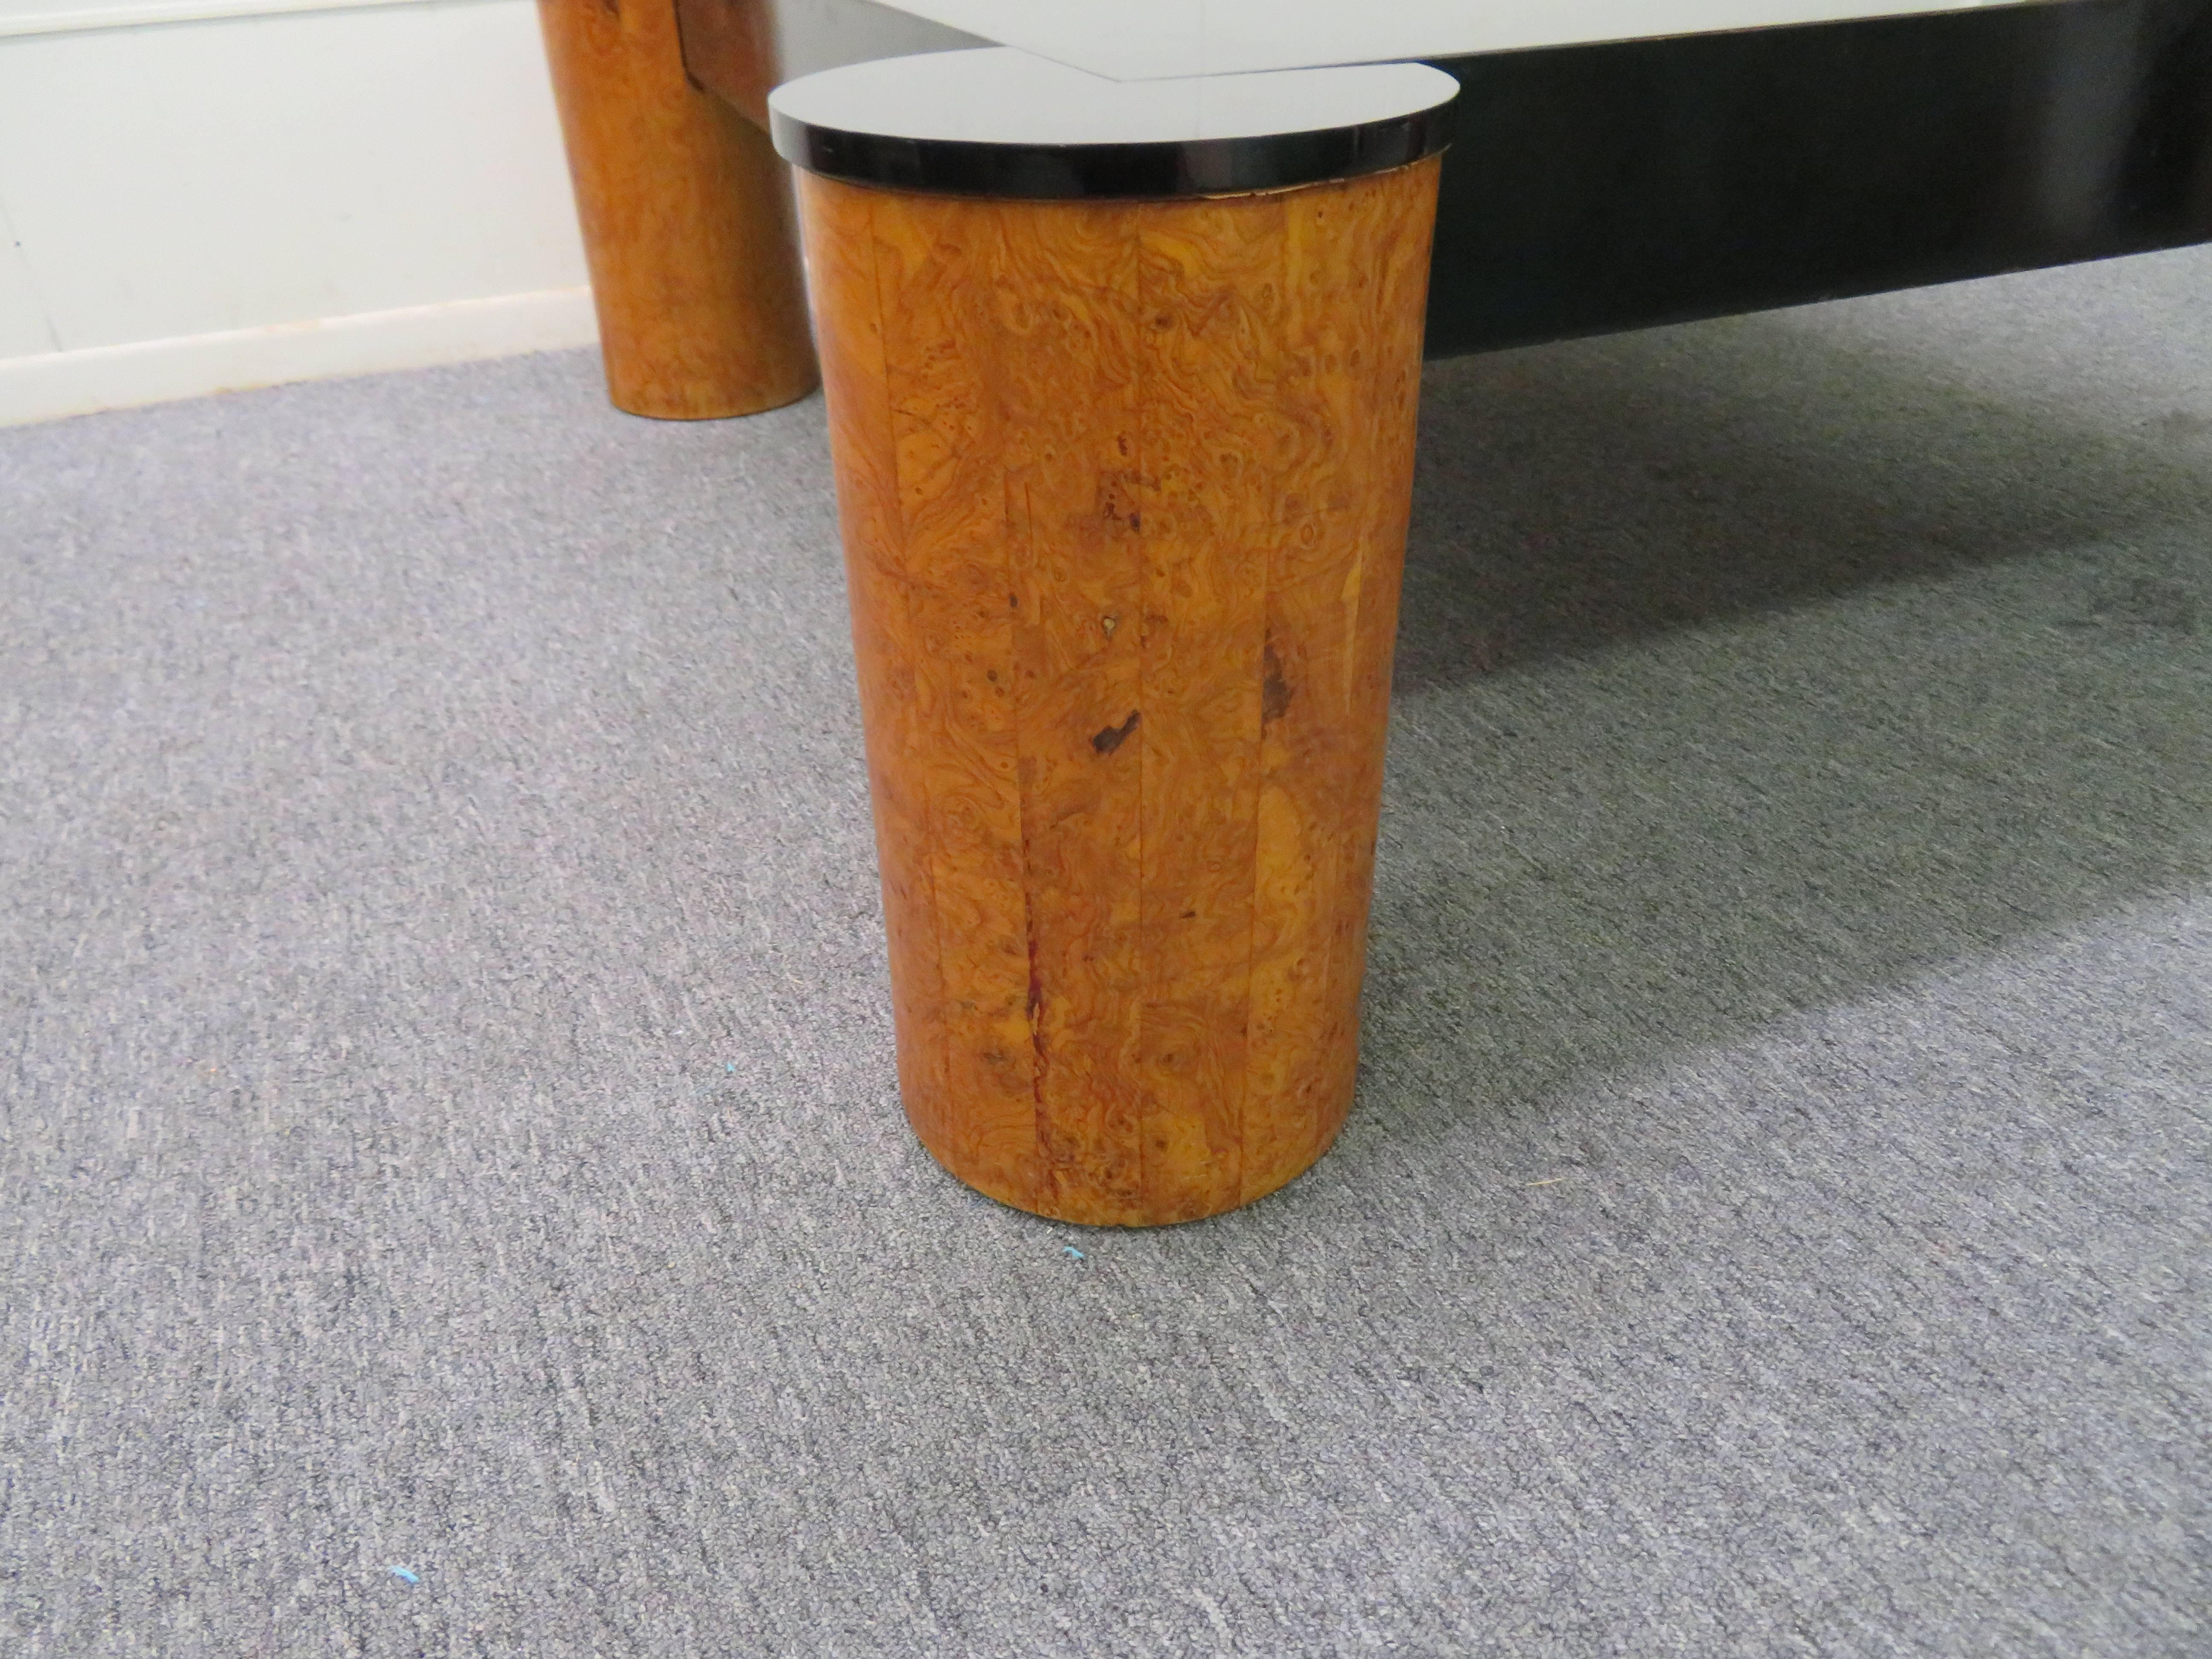 Magnifique table basse de style Karl Springer en bois d'olivier et laqué noir. Nous adorons les pieds cylindriques en bois d'olivier à grande échelle qui contrastent avec le plateau laqué noir.